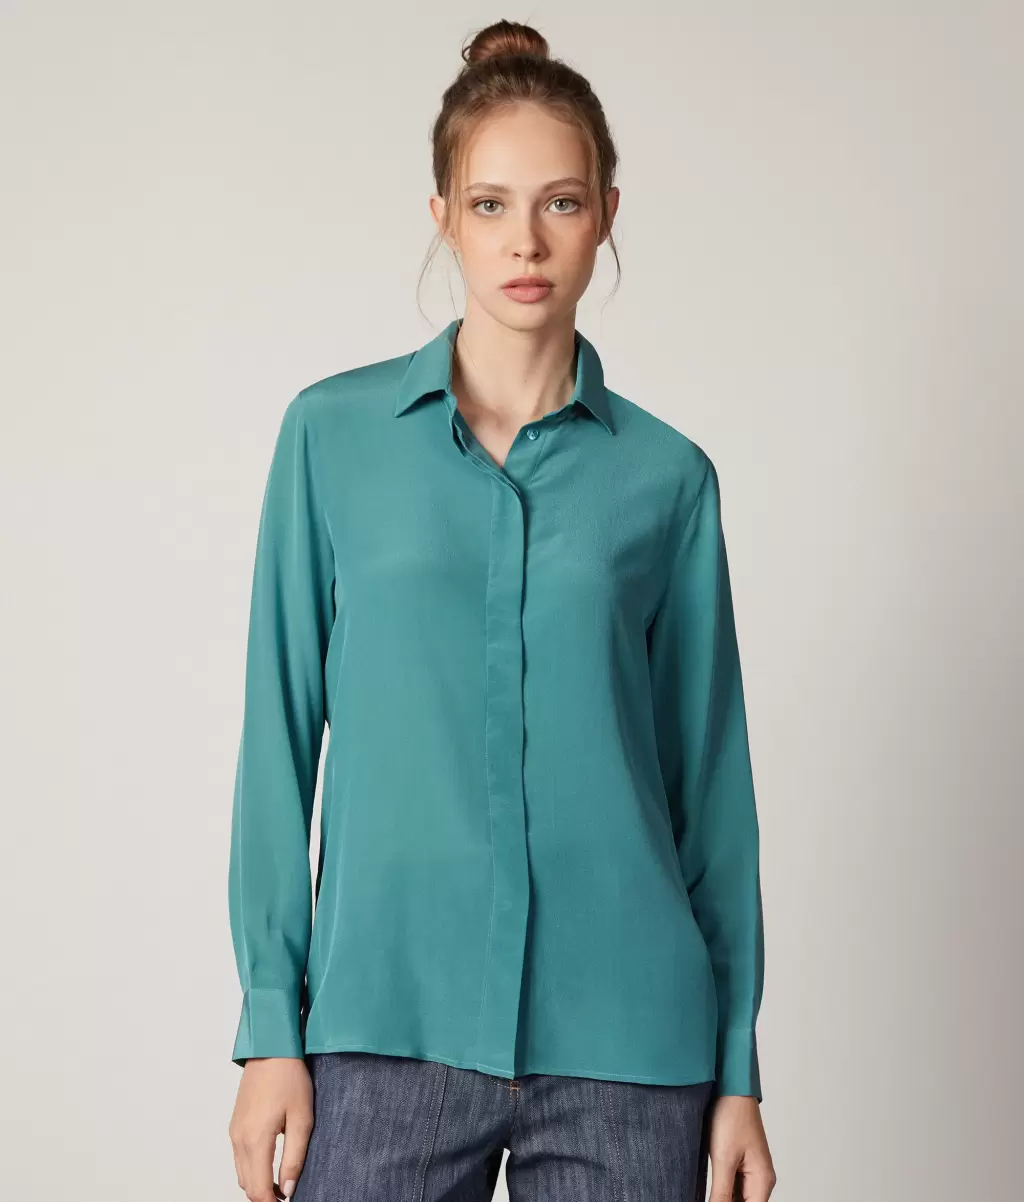 Green Koszule I Bluzki Kobieta Jedwabna Koszula Z Kołnierzykiem Falconeri - 1